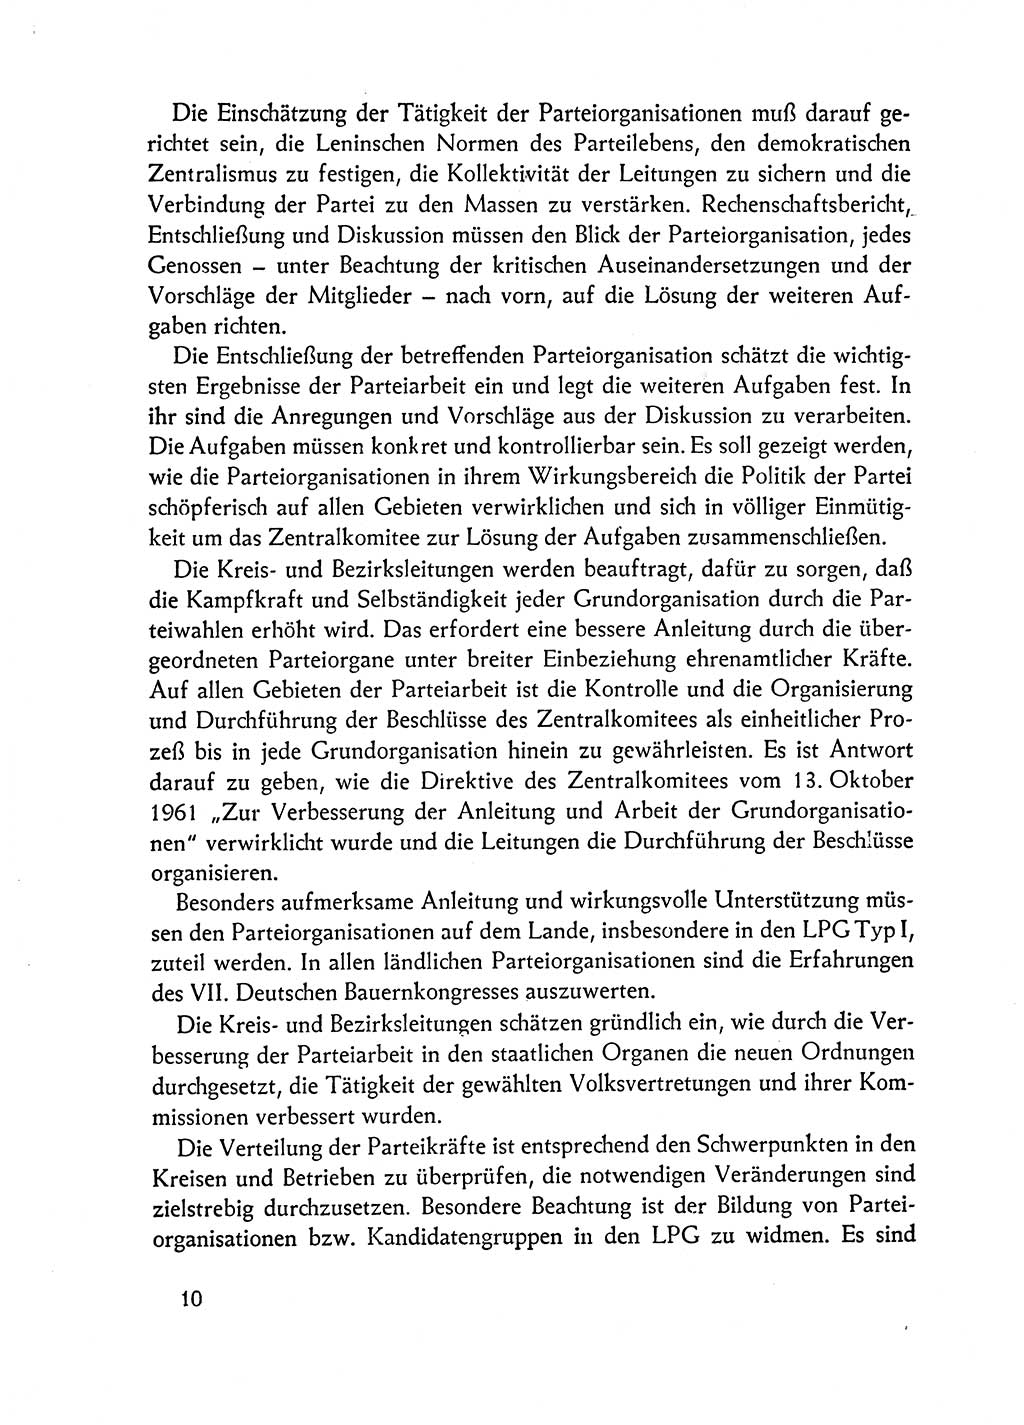 Dokumente der Sozialistischen Einheitspartei Deutschlands (SED) [Deutsche Demokratische Republik (DDR)] 1962-1963, Seite 10 (Dok. SED DDR 1962-1963, S. 10)